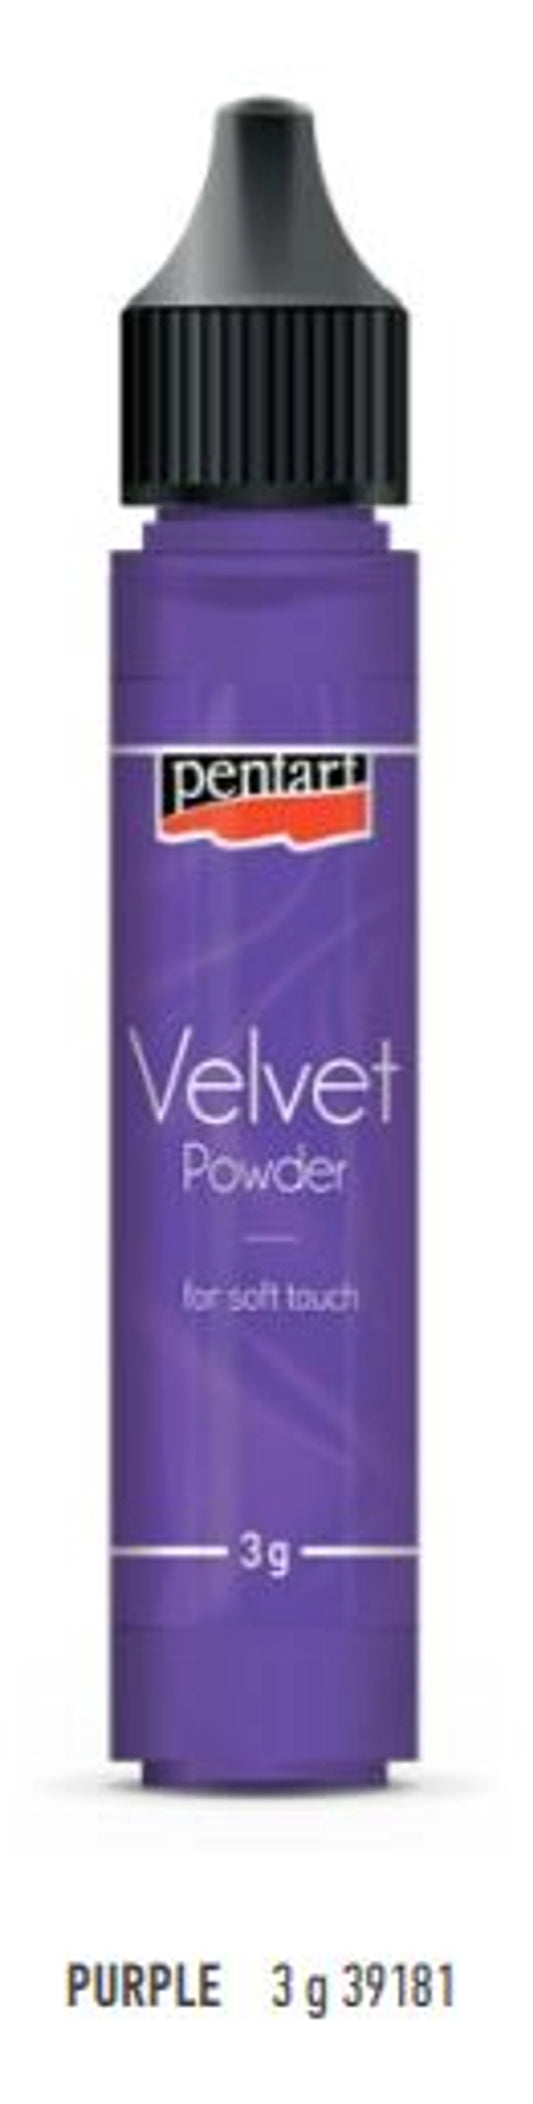 Velvet Powder purple